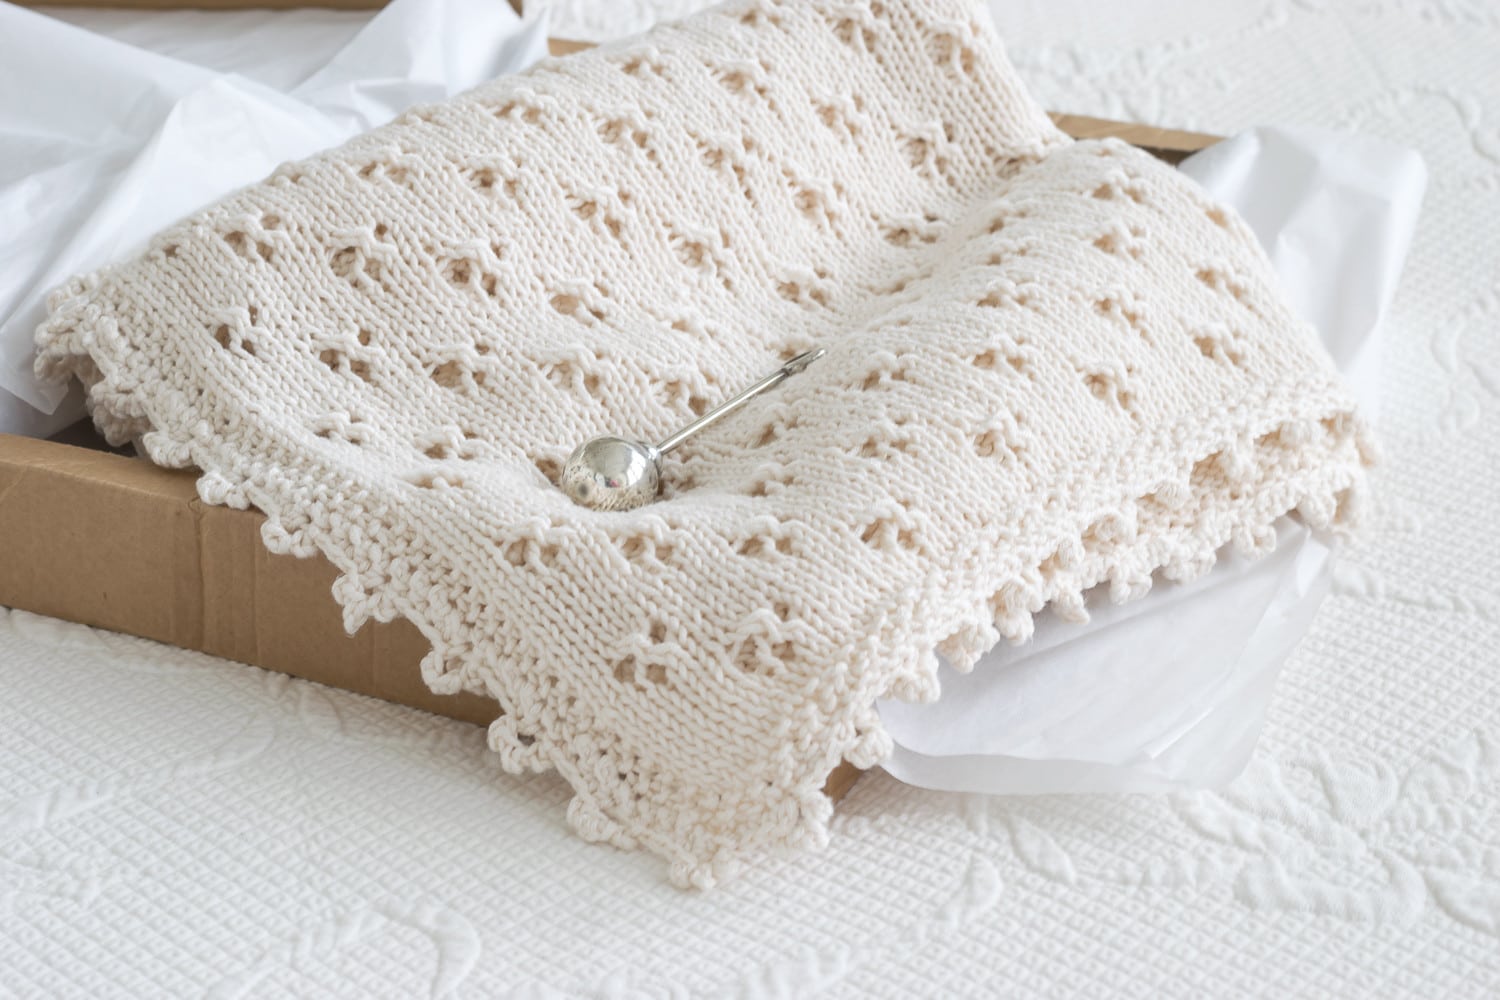 Knit Baby Blanket Pattern: Eyelet Stitch blanket in gift box